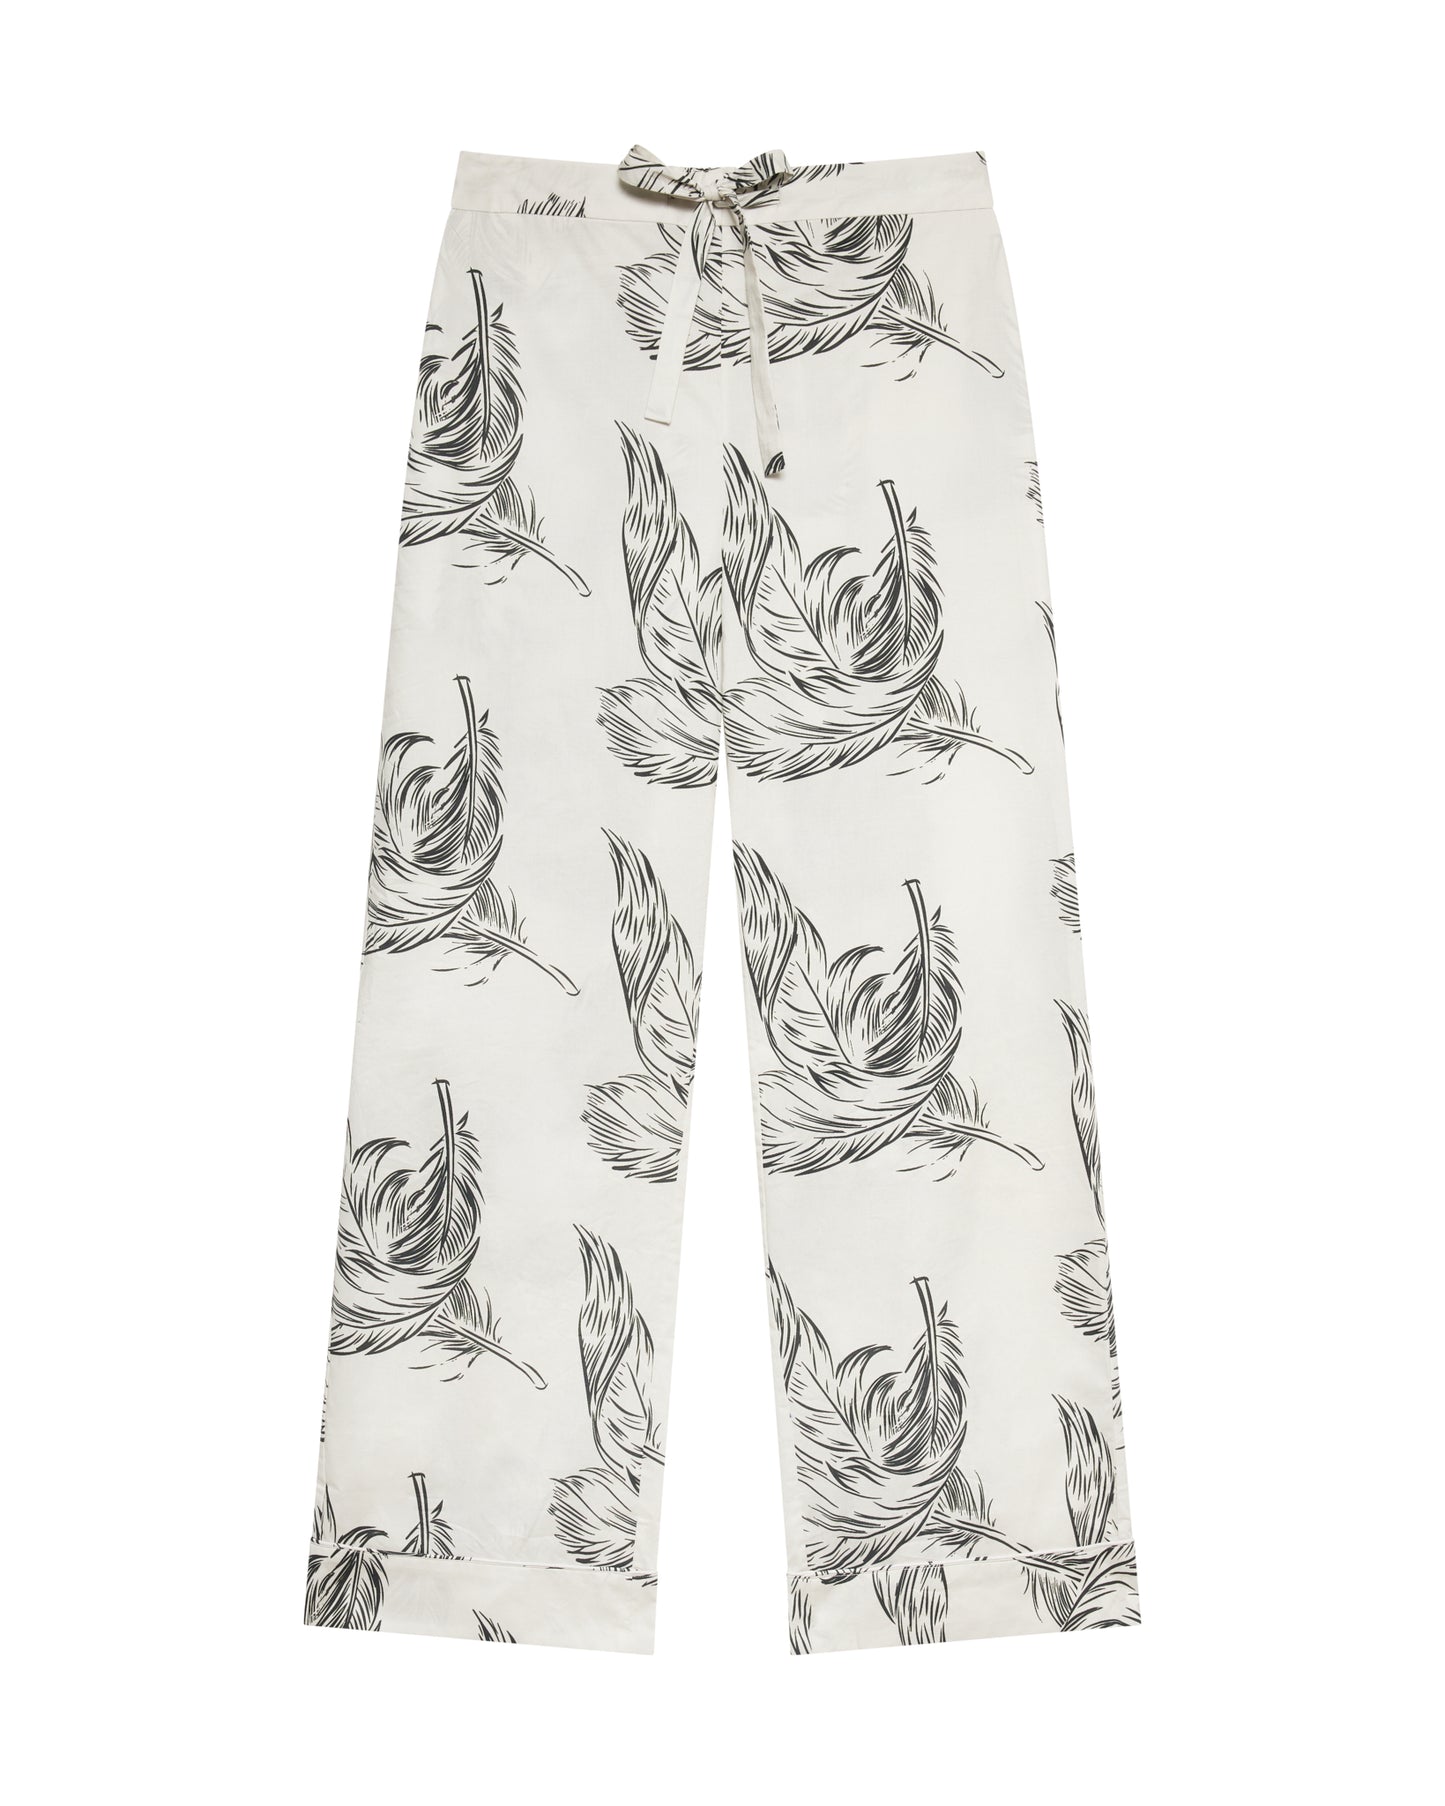 Feather Print Pyjama Set - Off White